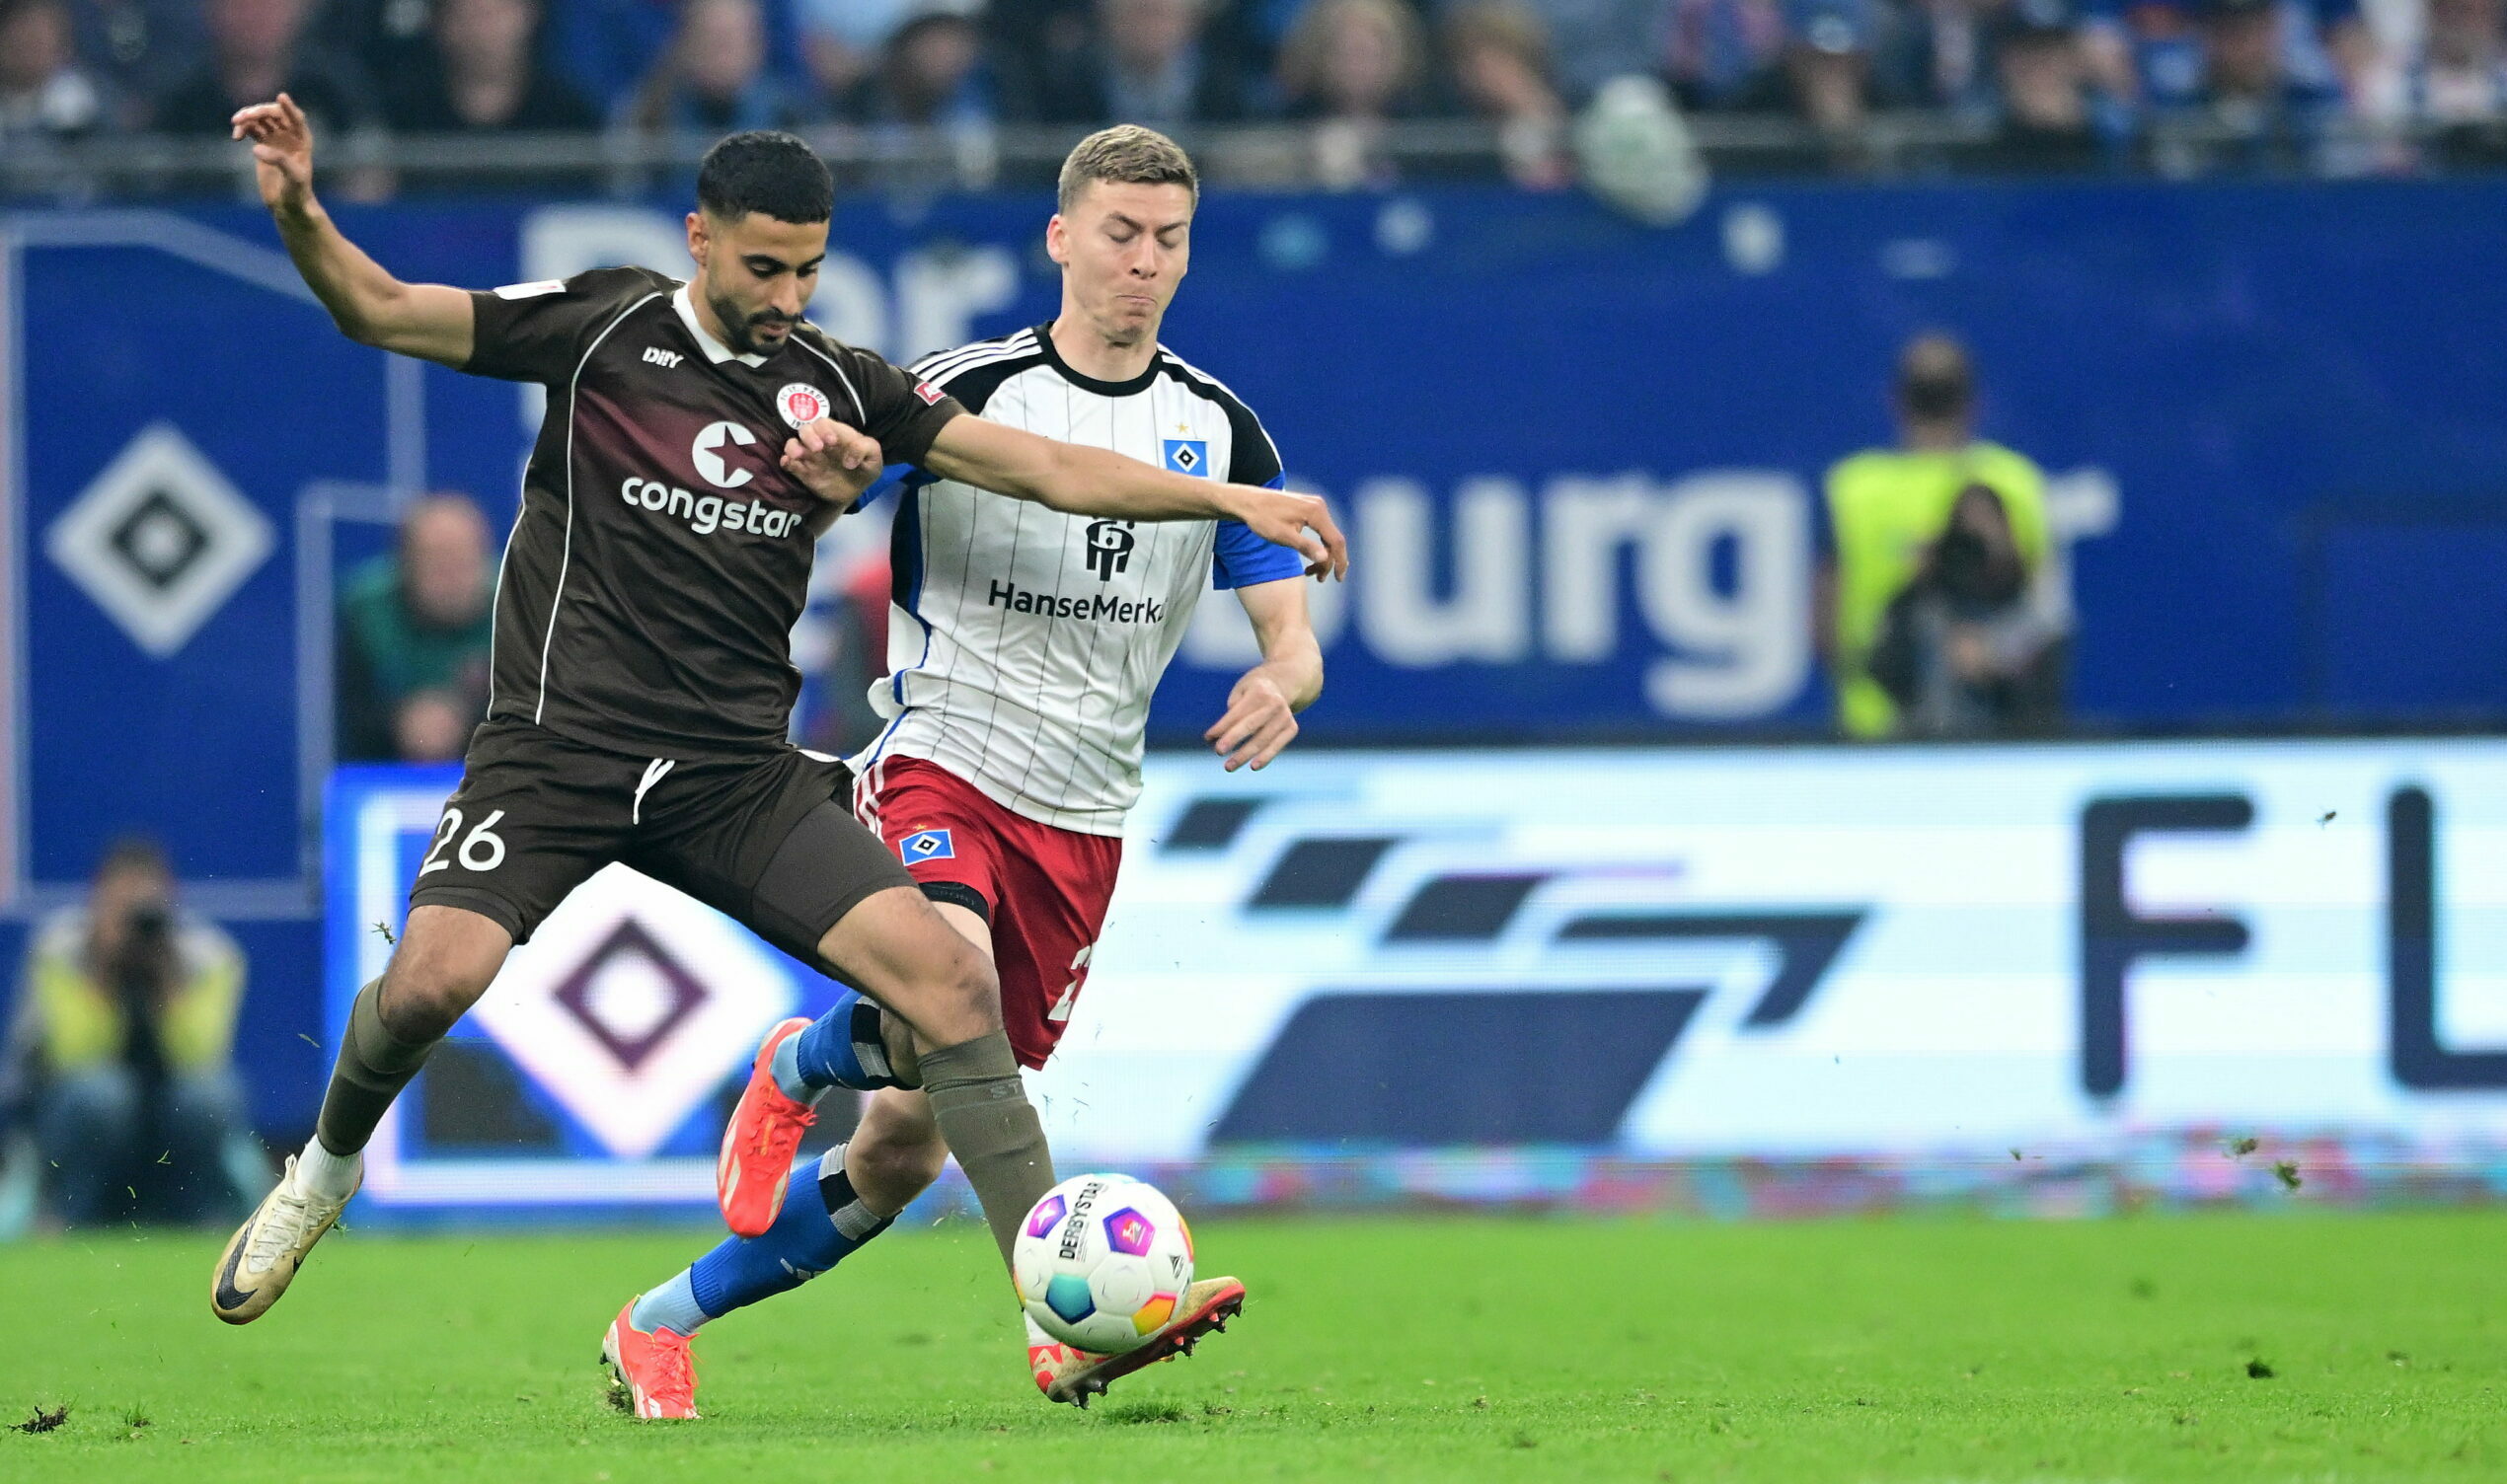 Elias Saad vom FC St. Pauli kämpft mit HSV-Profi Ignace Van der Brempt um den Ball